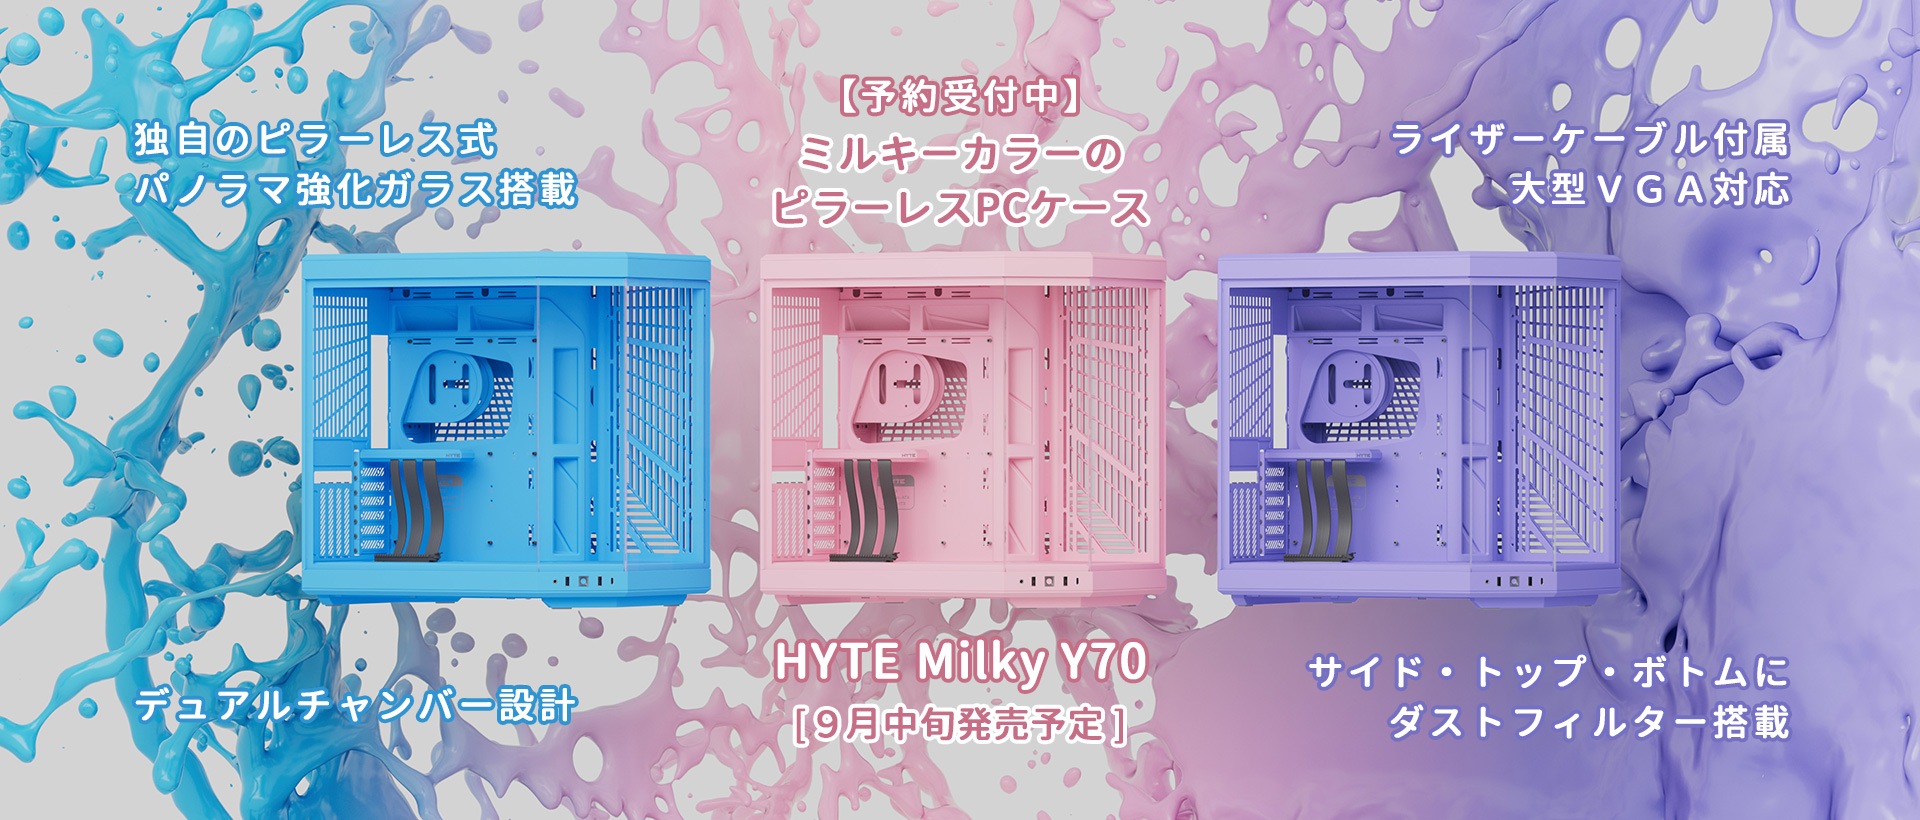 ミルキーカラーのピラーレスPCケース「HYTE Milky Y70」